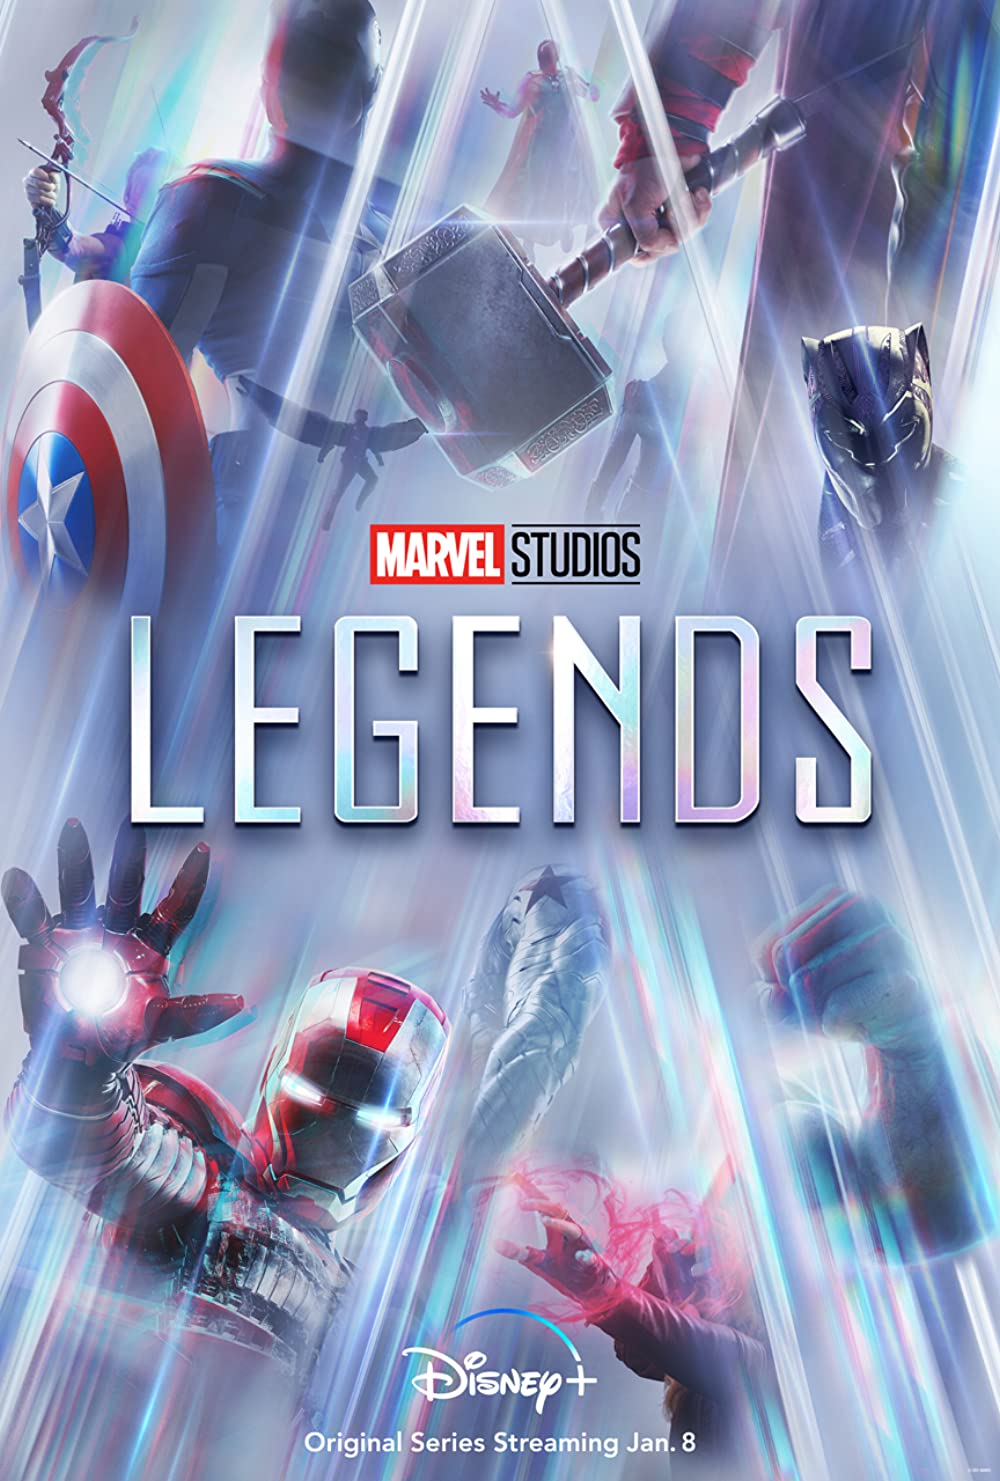 Filmbeschreibung zu Marvel Studio Legends